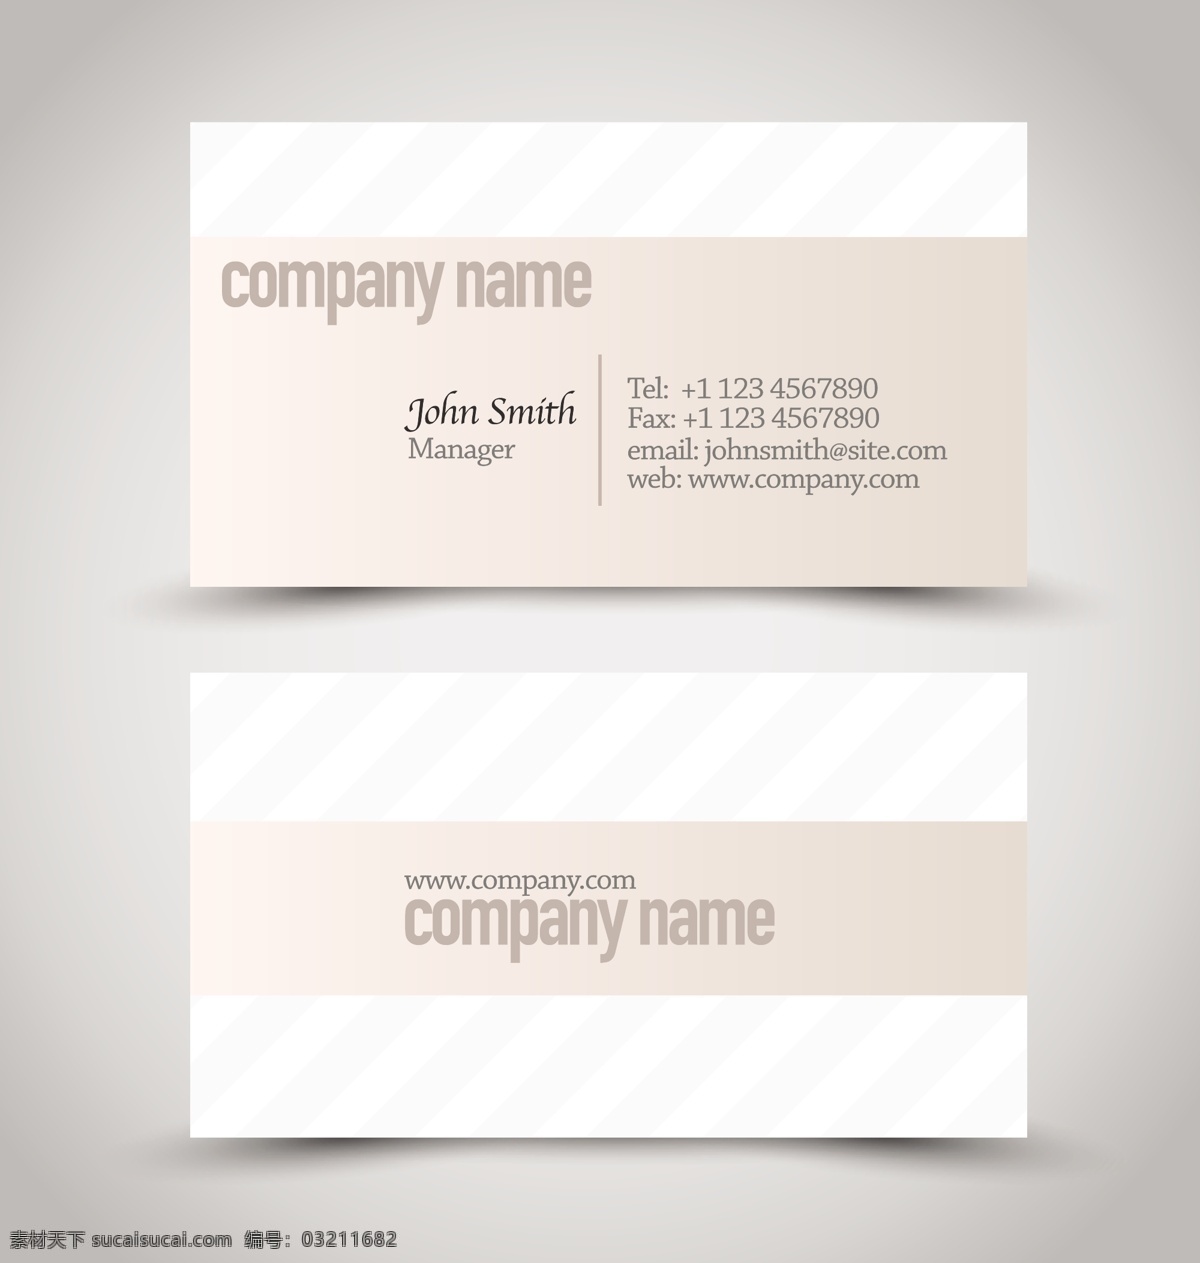 高端 简洁 名片 矢量 模板 灰色 商务 卡片 矢量素材 设计素材